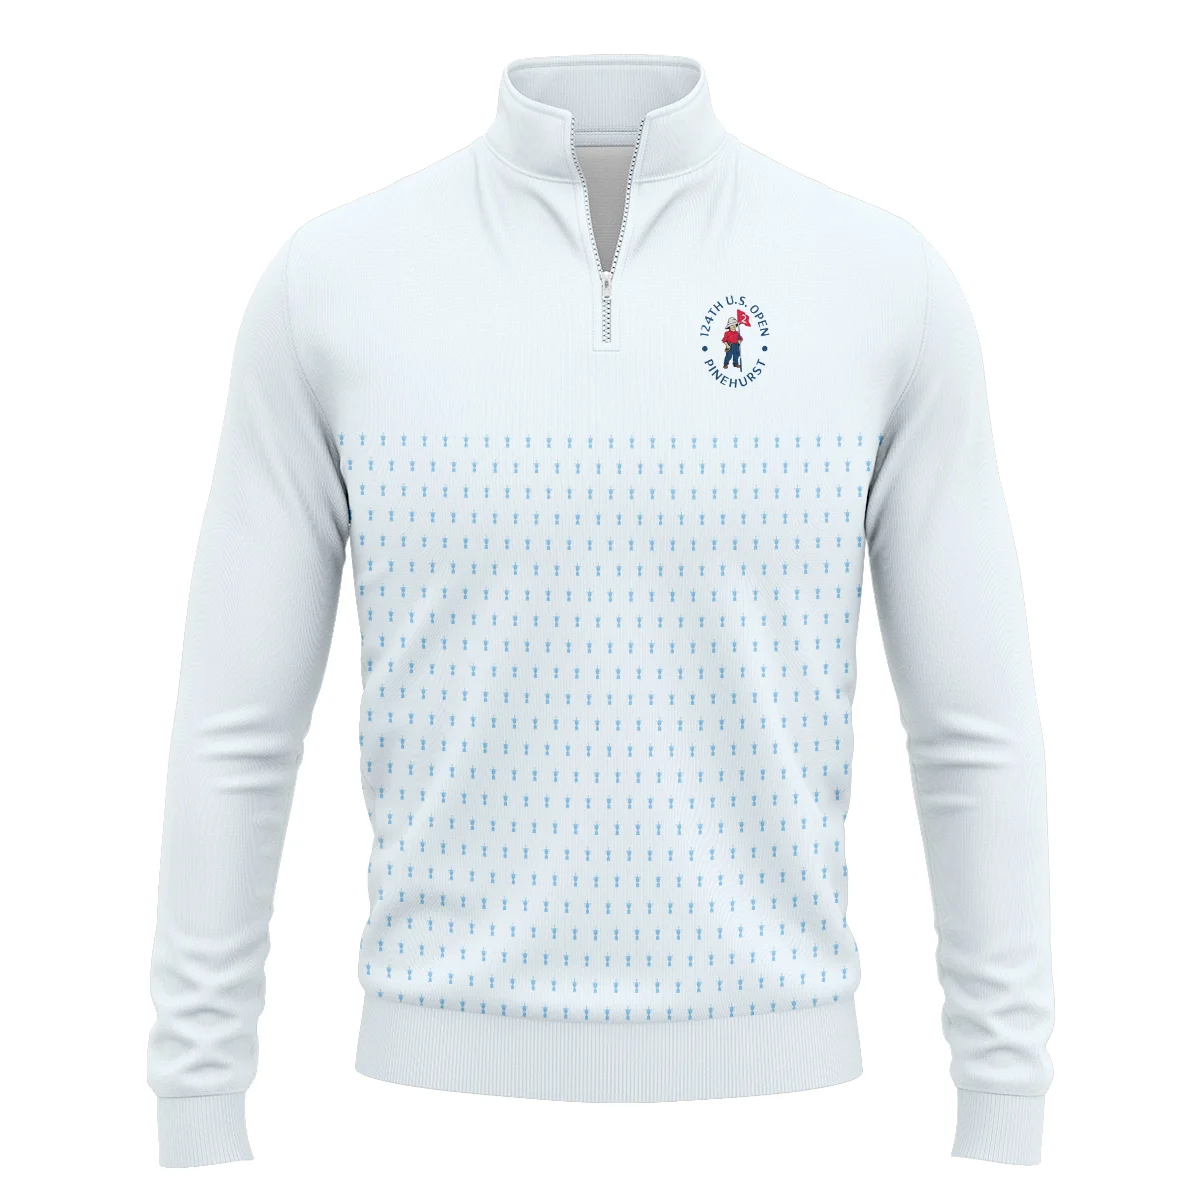 U.S Open Trophy Pattern Light Blue 124th U.S. Open Pinehurst Titleist Unisex Sweatshirt Style Classic Sweatshirt